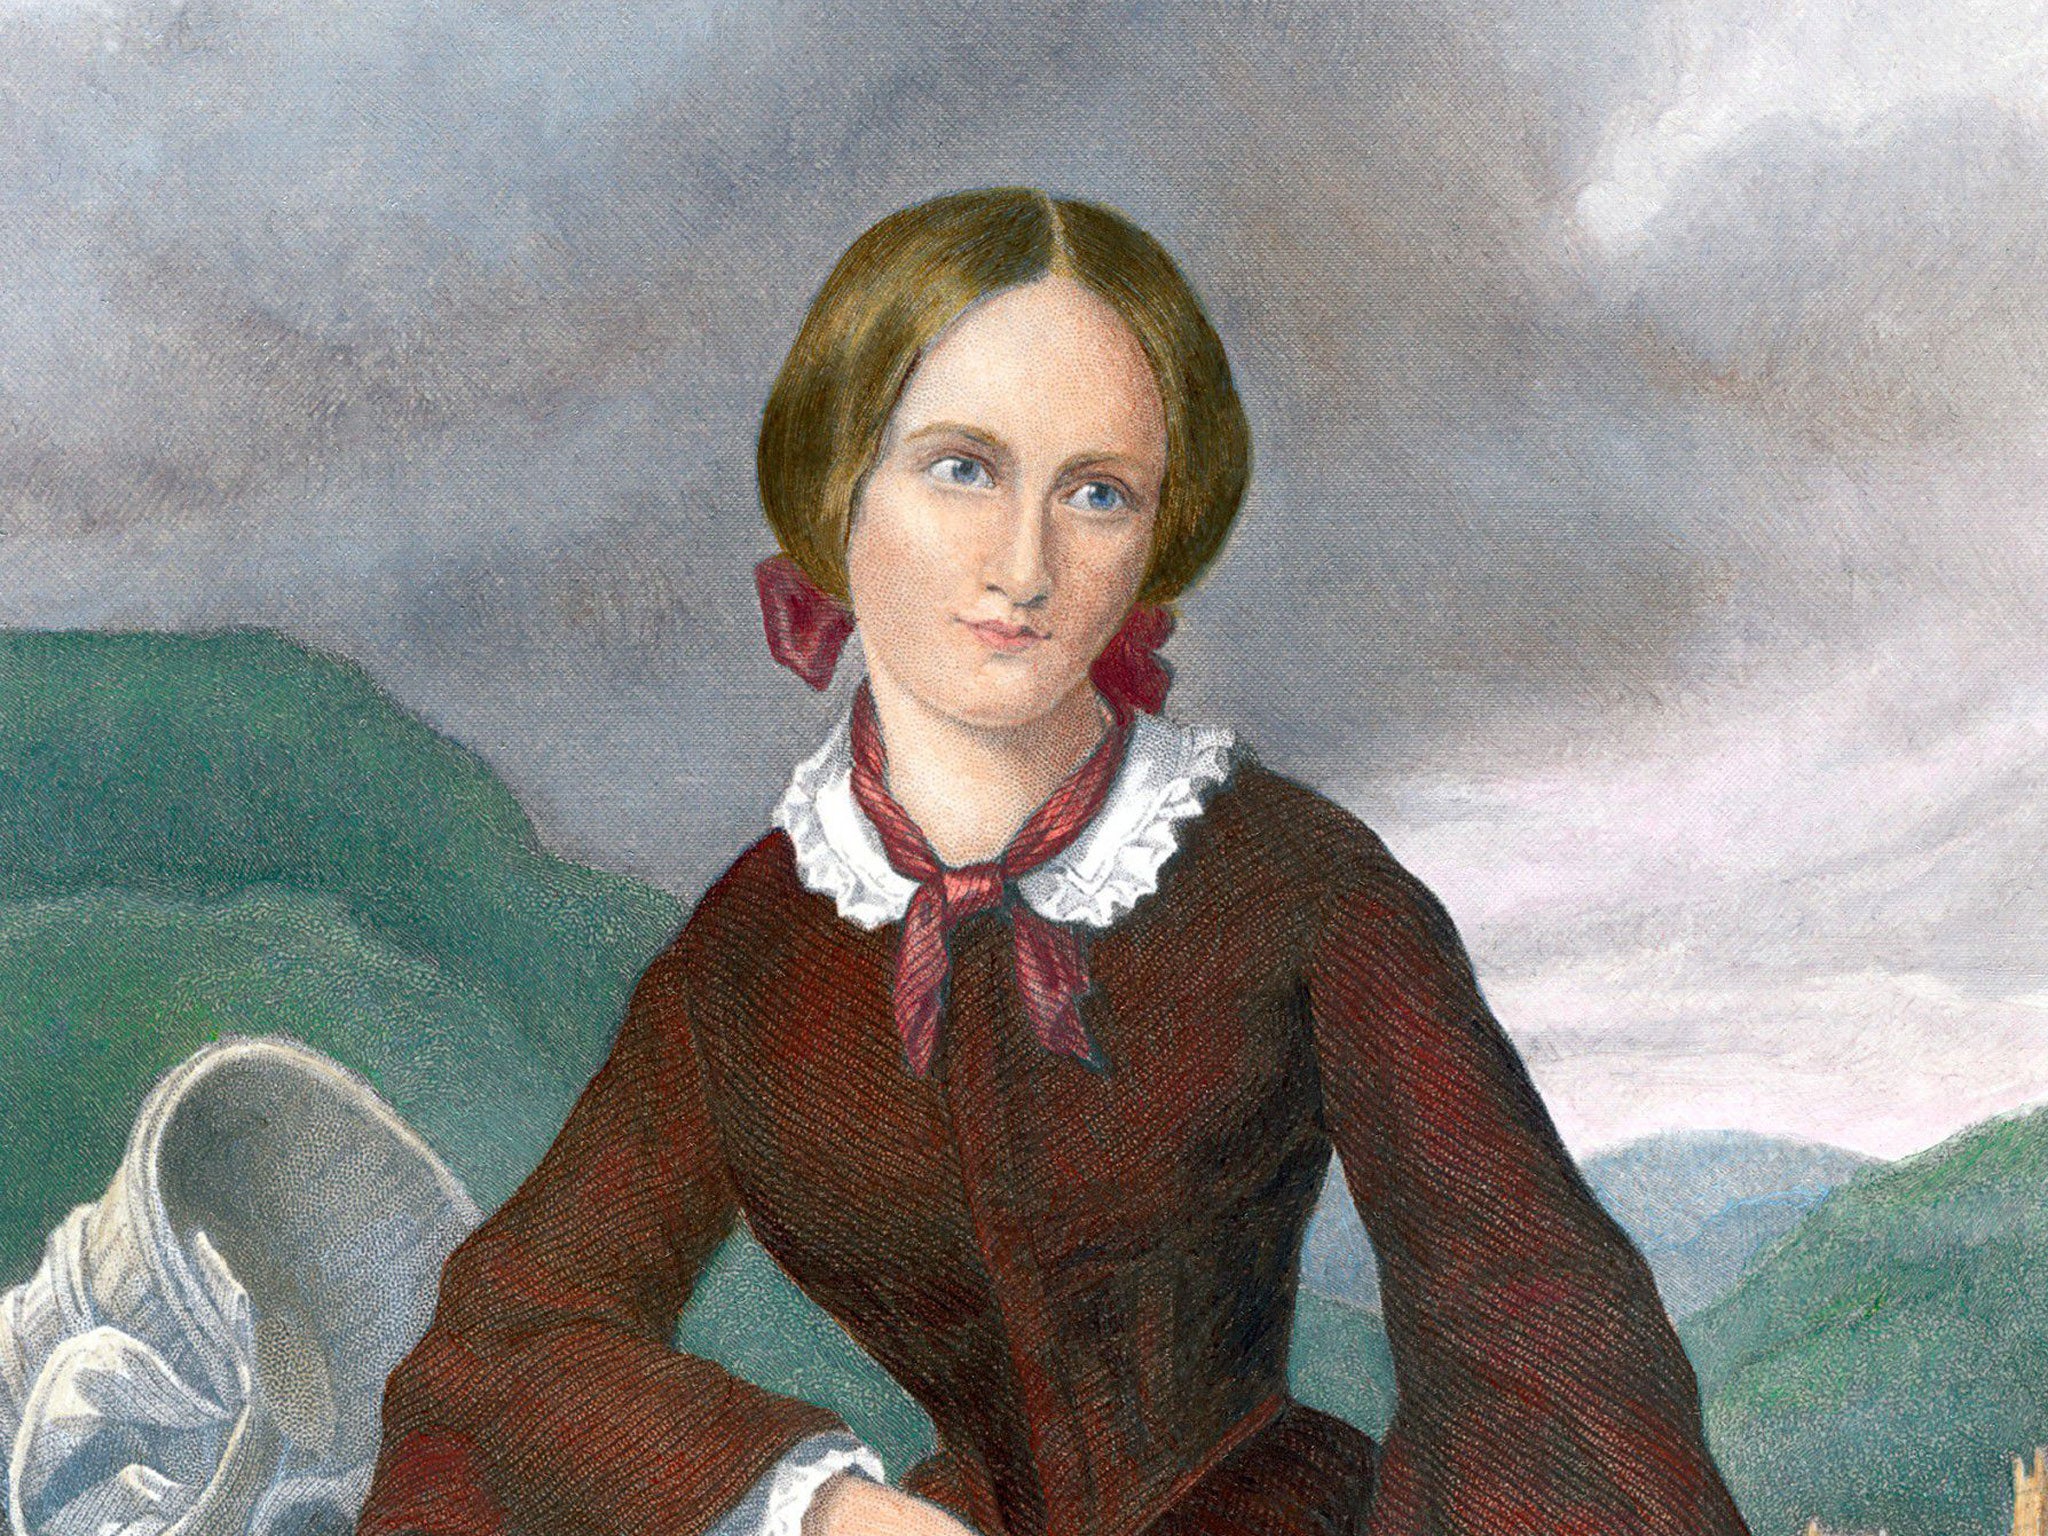 Moral dilemmas: Charlotte Brontë portrait by George Richmond